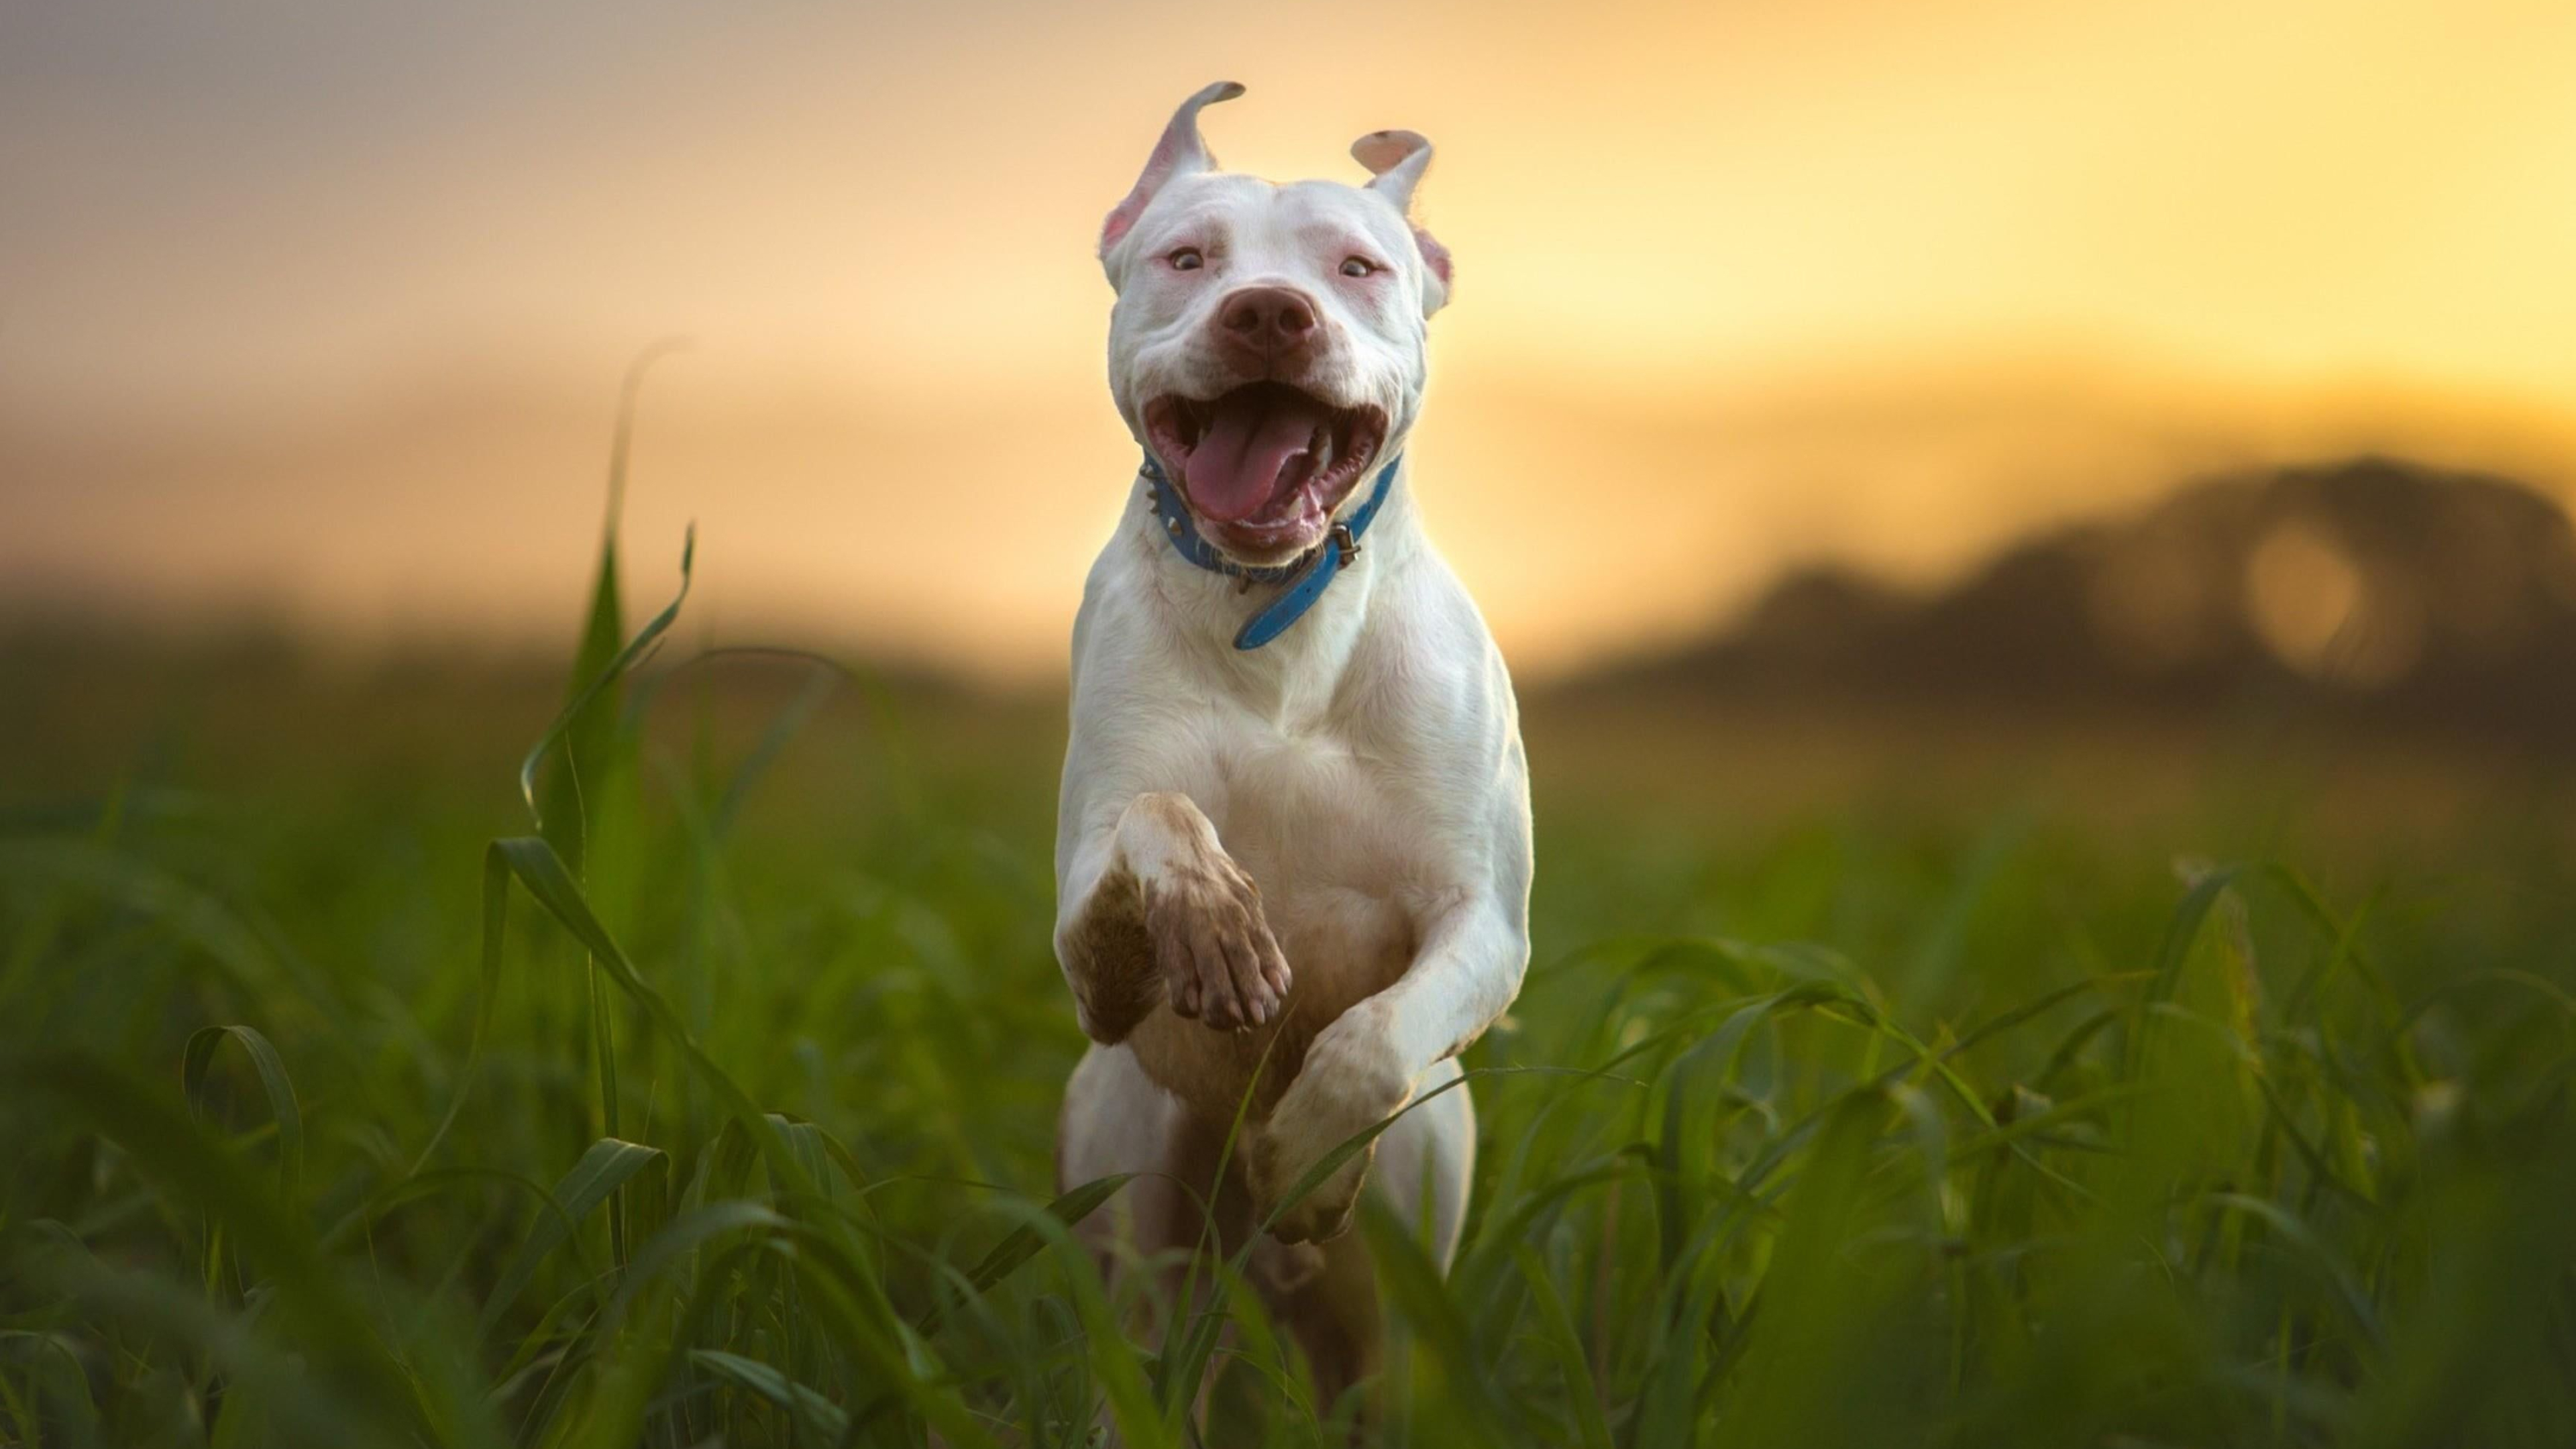 3840x2160 pitbull #dog #run #blurry #breed #4K #wallpaper #hdwallpaper #desktop | Pitbull dog breed, Pitbull dog, Pitbulls